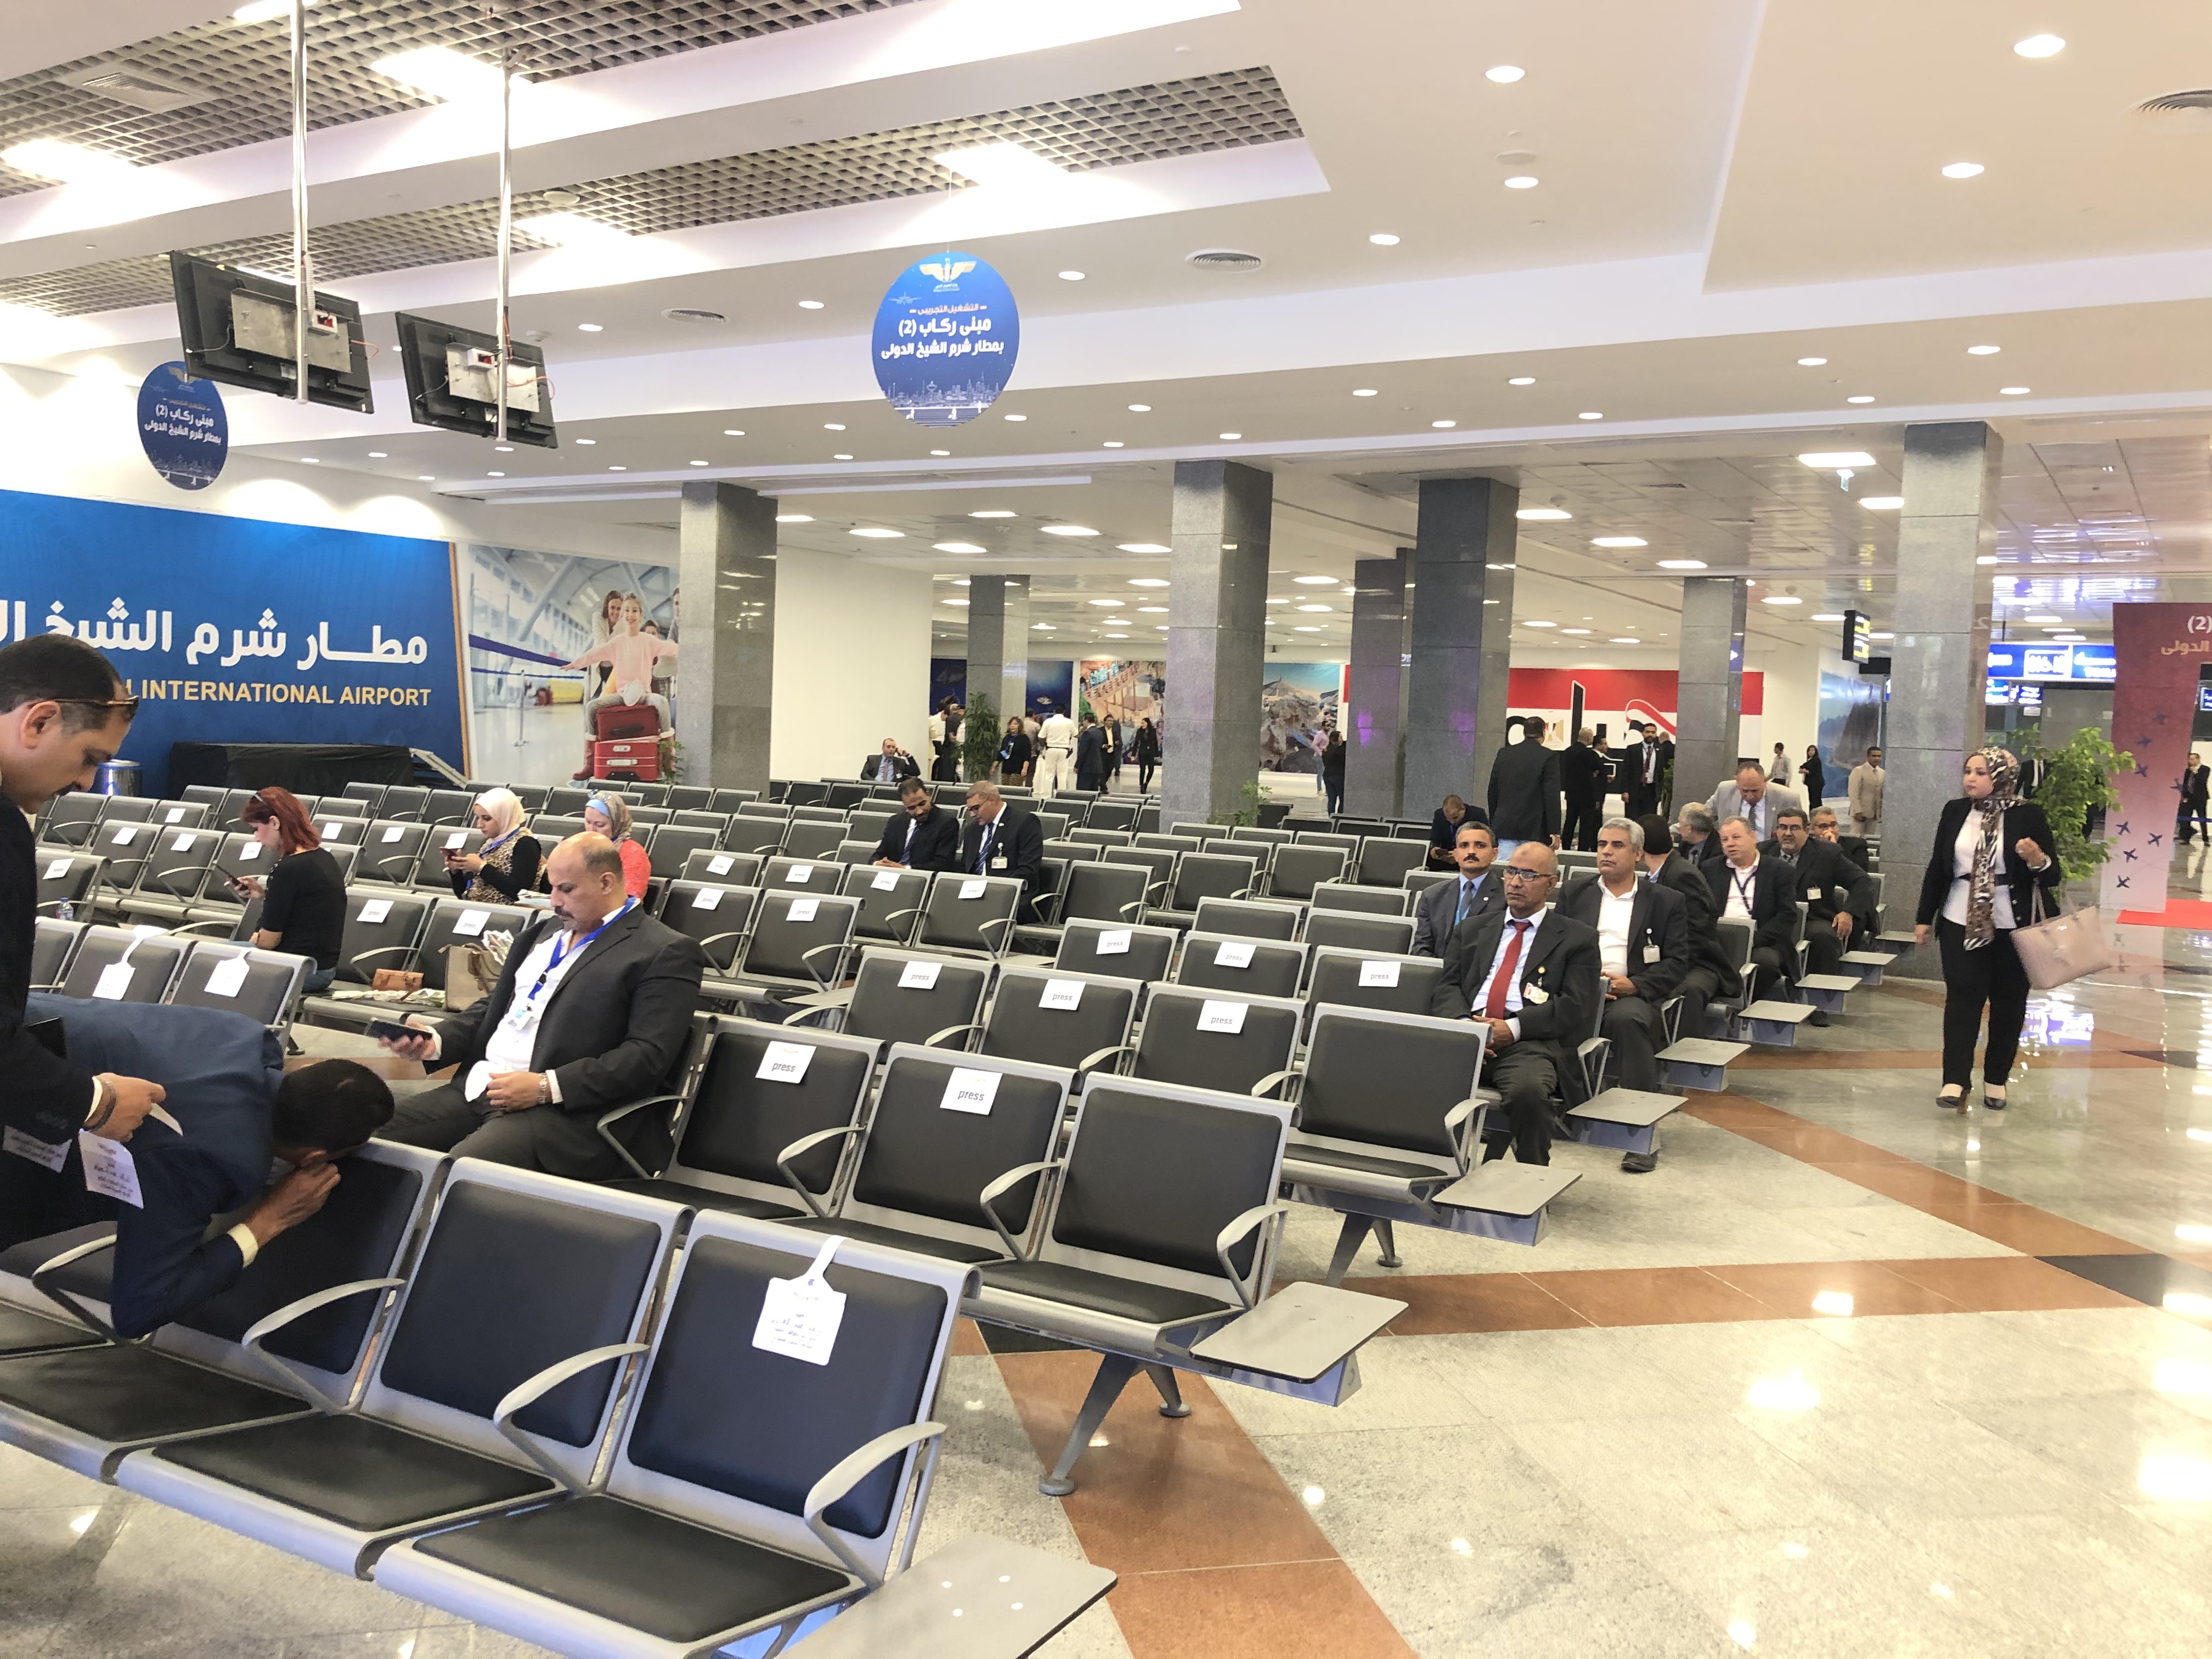 مبنى الركاب2 بمطار شرم الشيخ الدولي